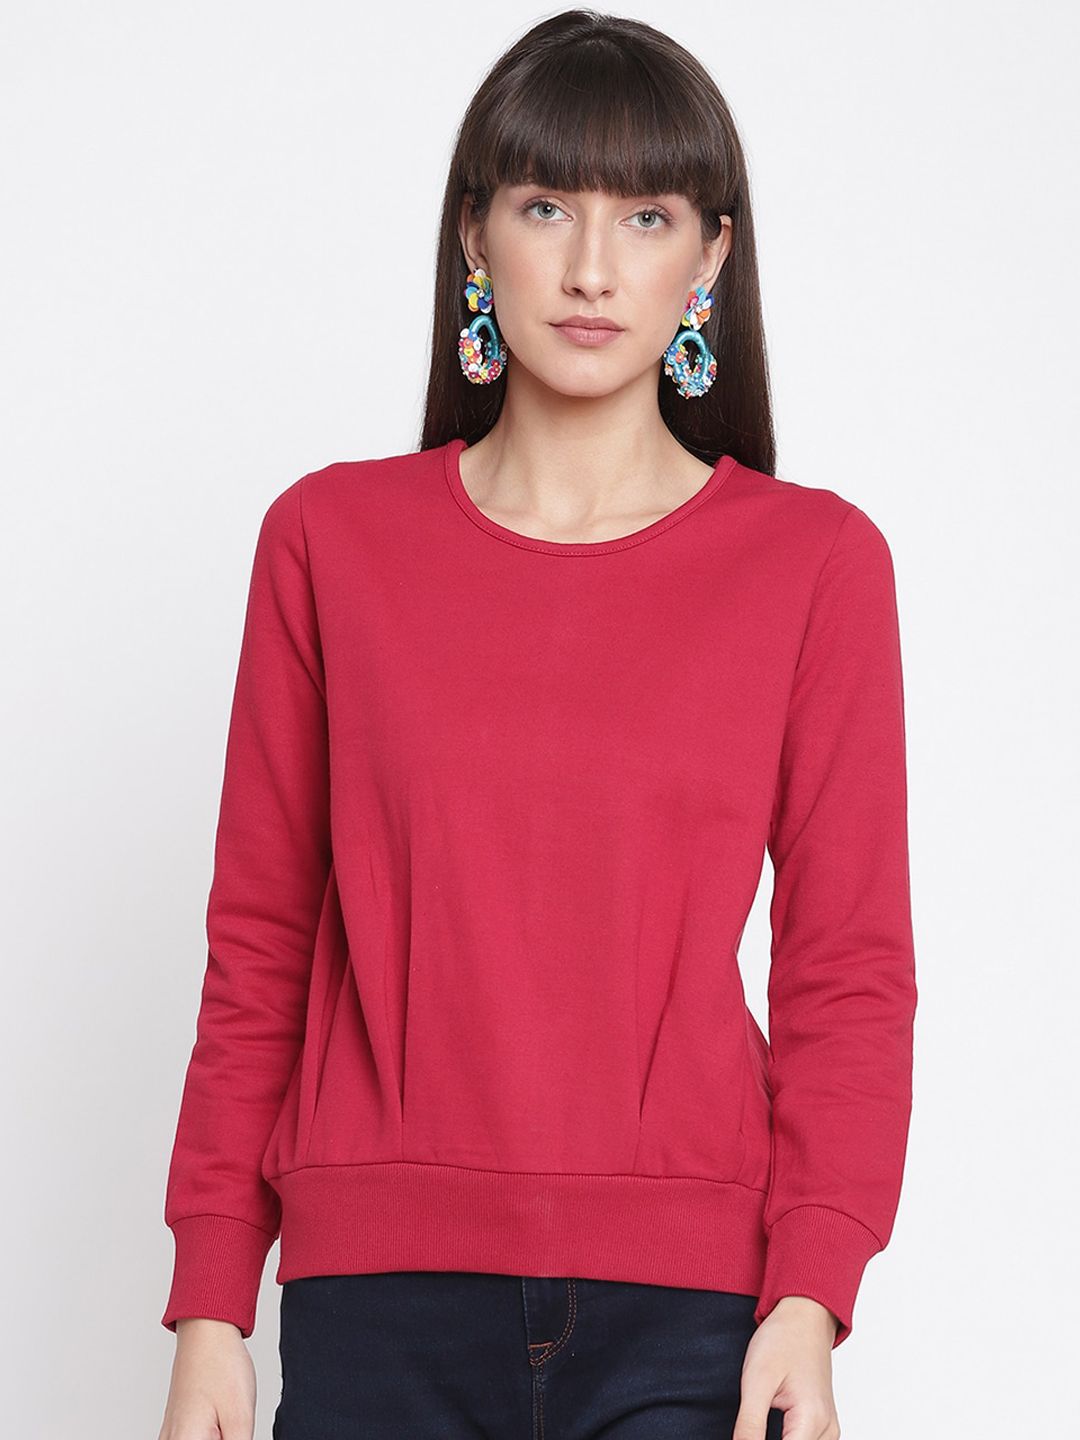 The Vanca Women Red Sweatshirt Price in India